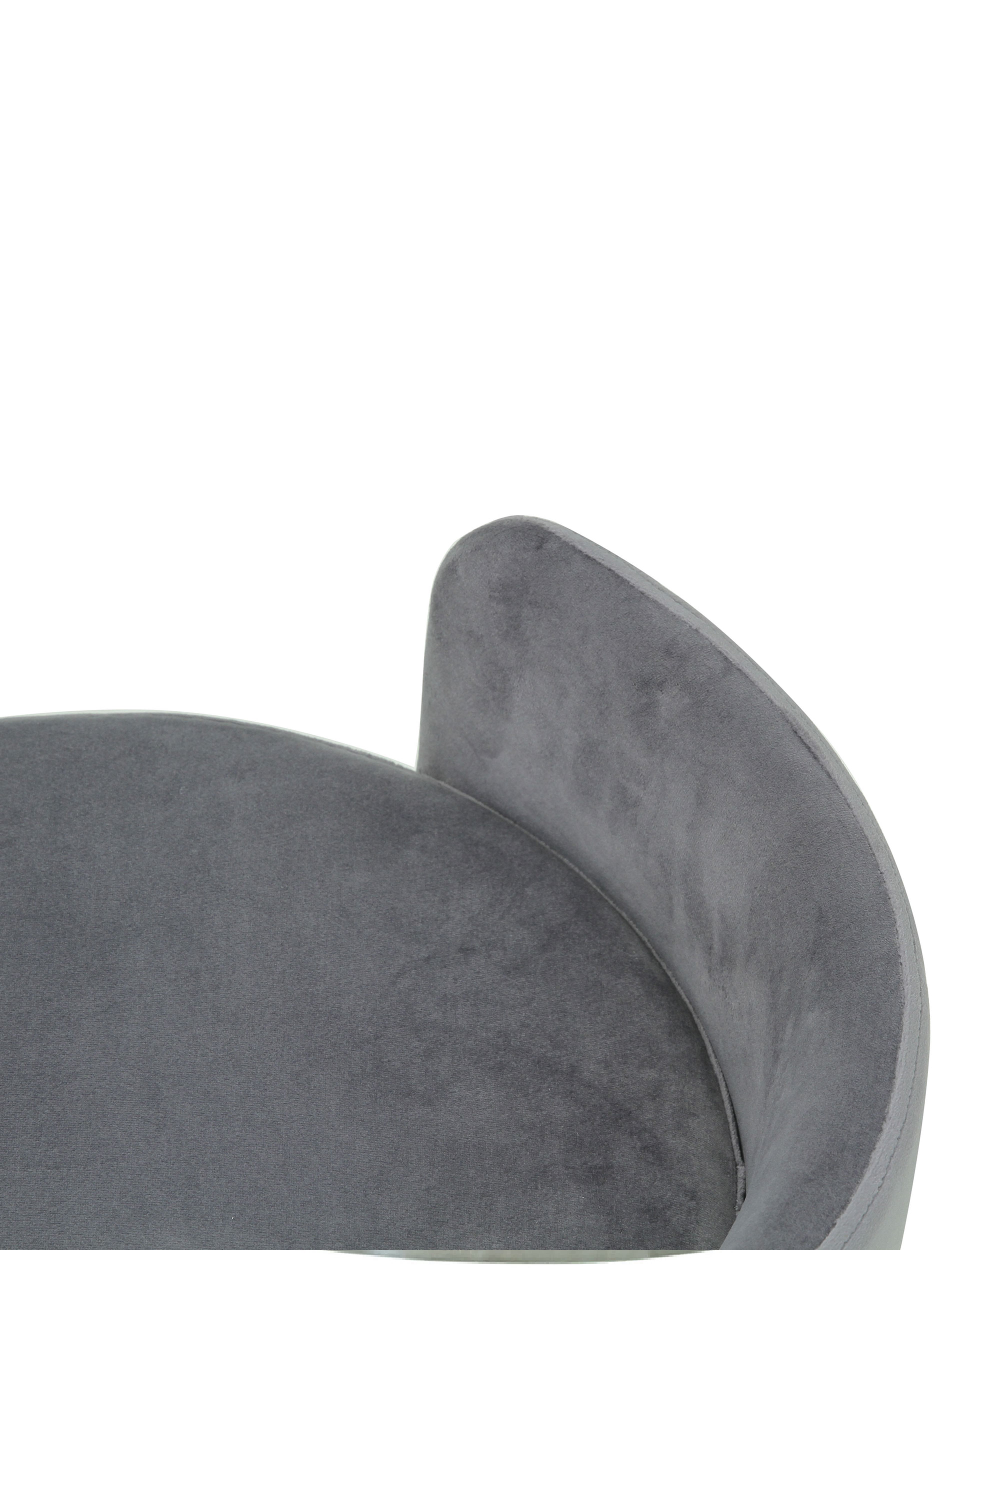 Round Gray Velvet Upholstered Stool | Andrew Martin Otis | OROA